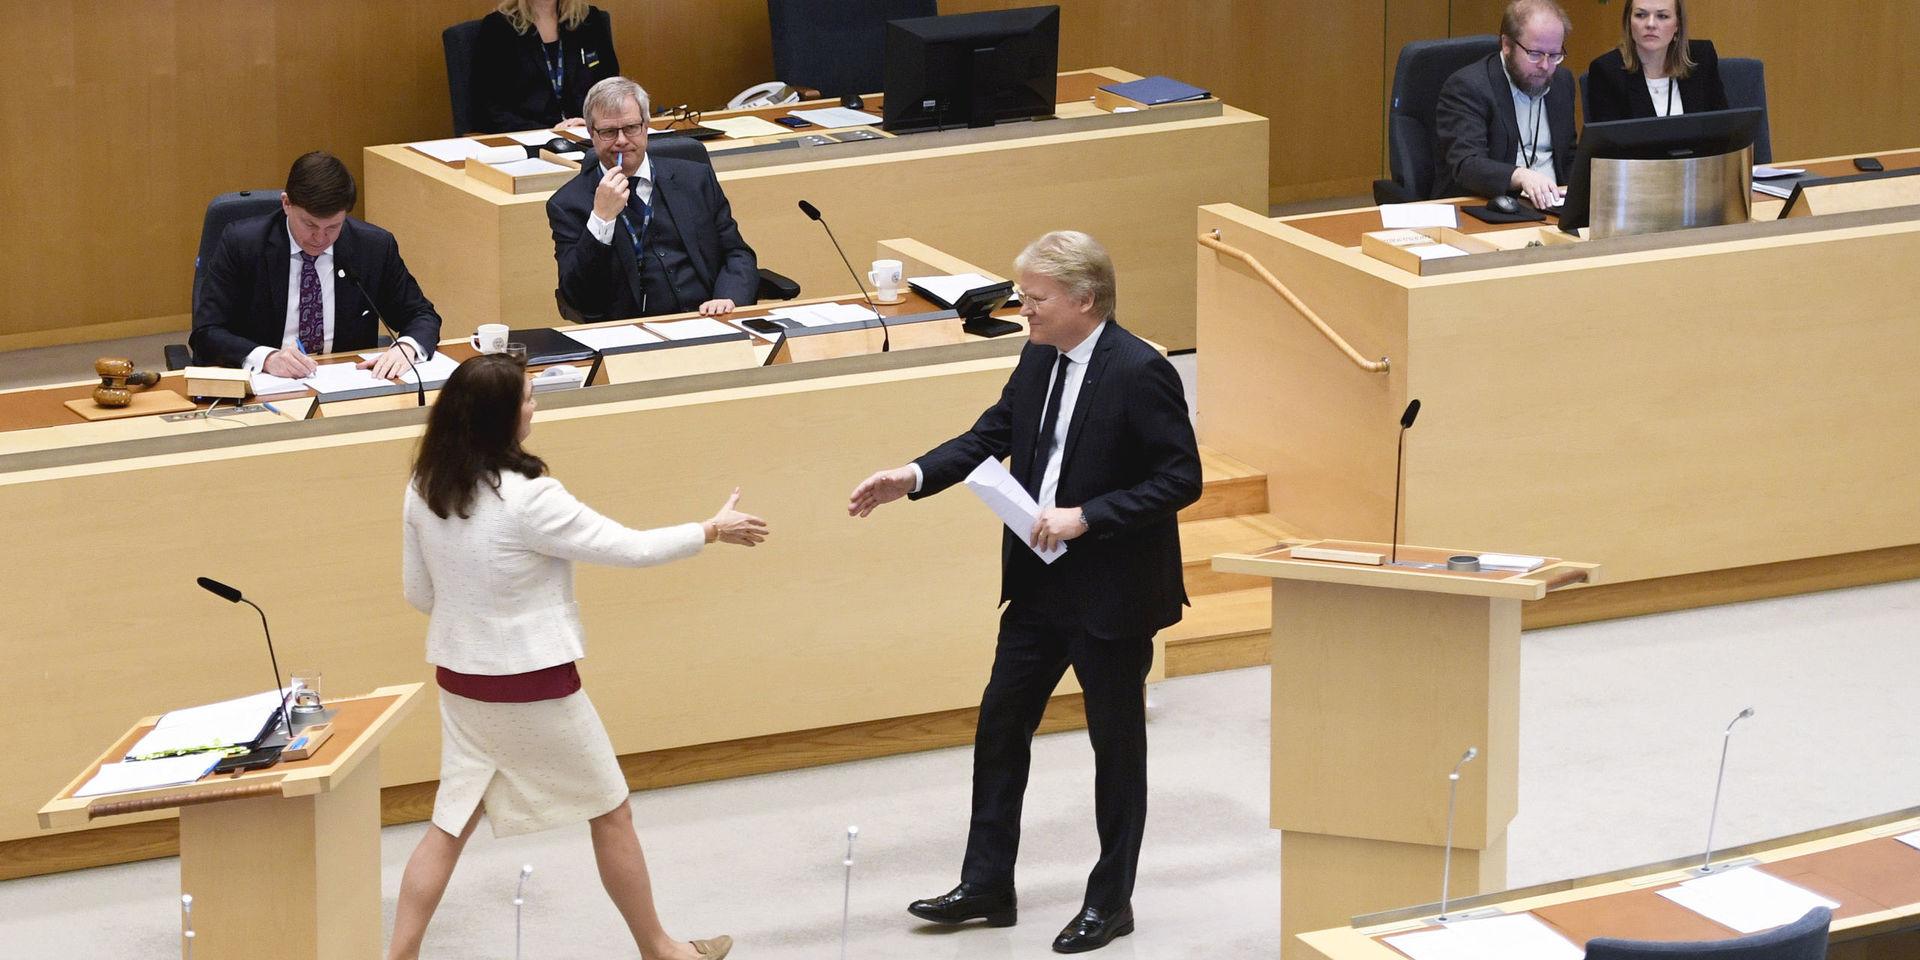 STOCKHOLM 20200212
Utrikesminister Ann Linde (S) och Lars Adaktusson (KD)  debatterar under den utrikespolitiska debatten i i riksdagen i Stockholm.
Foto: Ali Lorestani / TT kod 11950